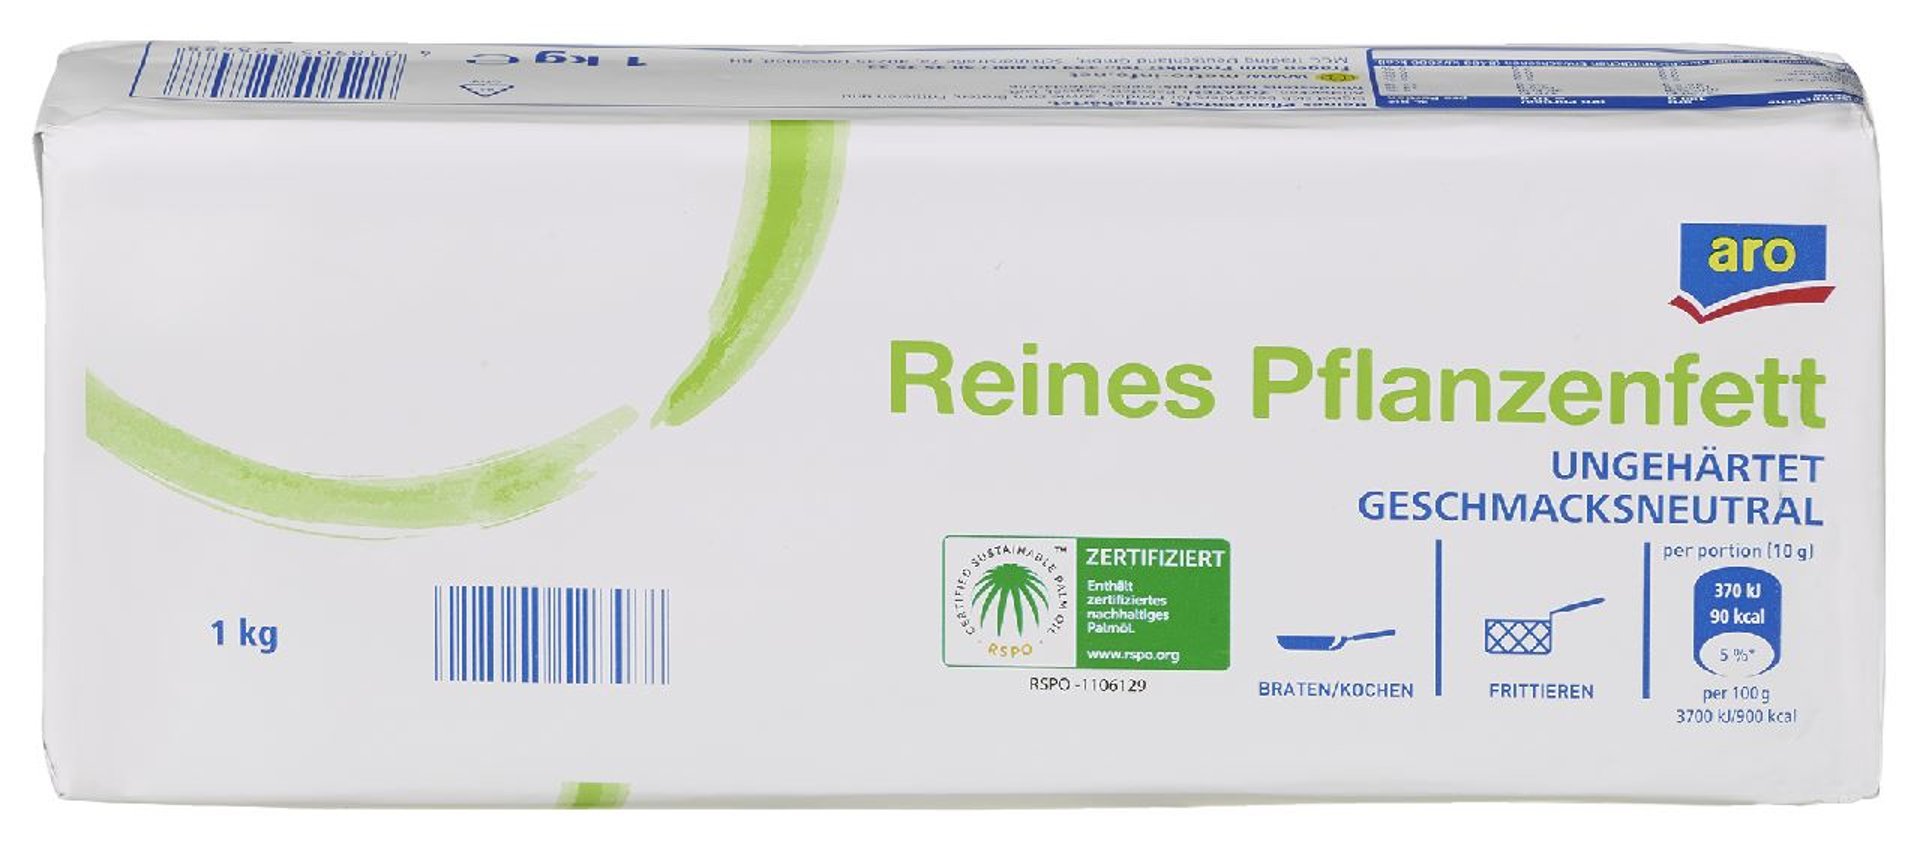 aro - Pflanzenfett ungehärtet - 10 kg Karton